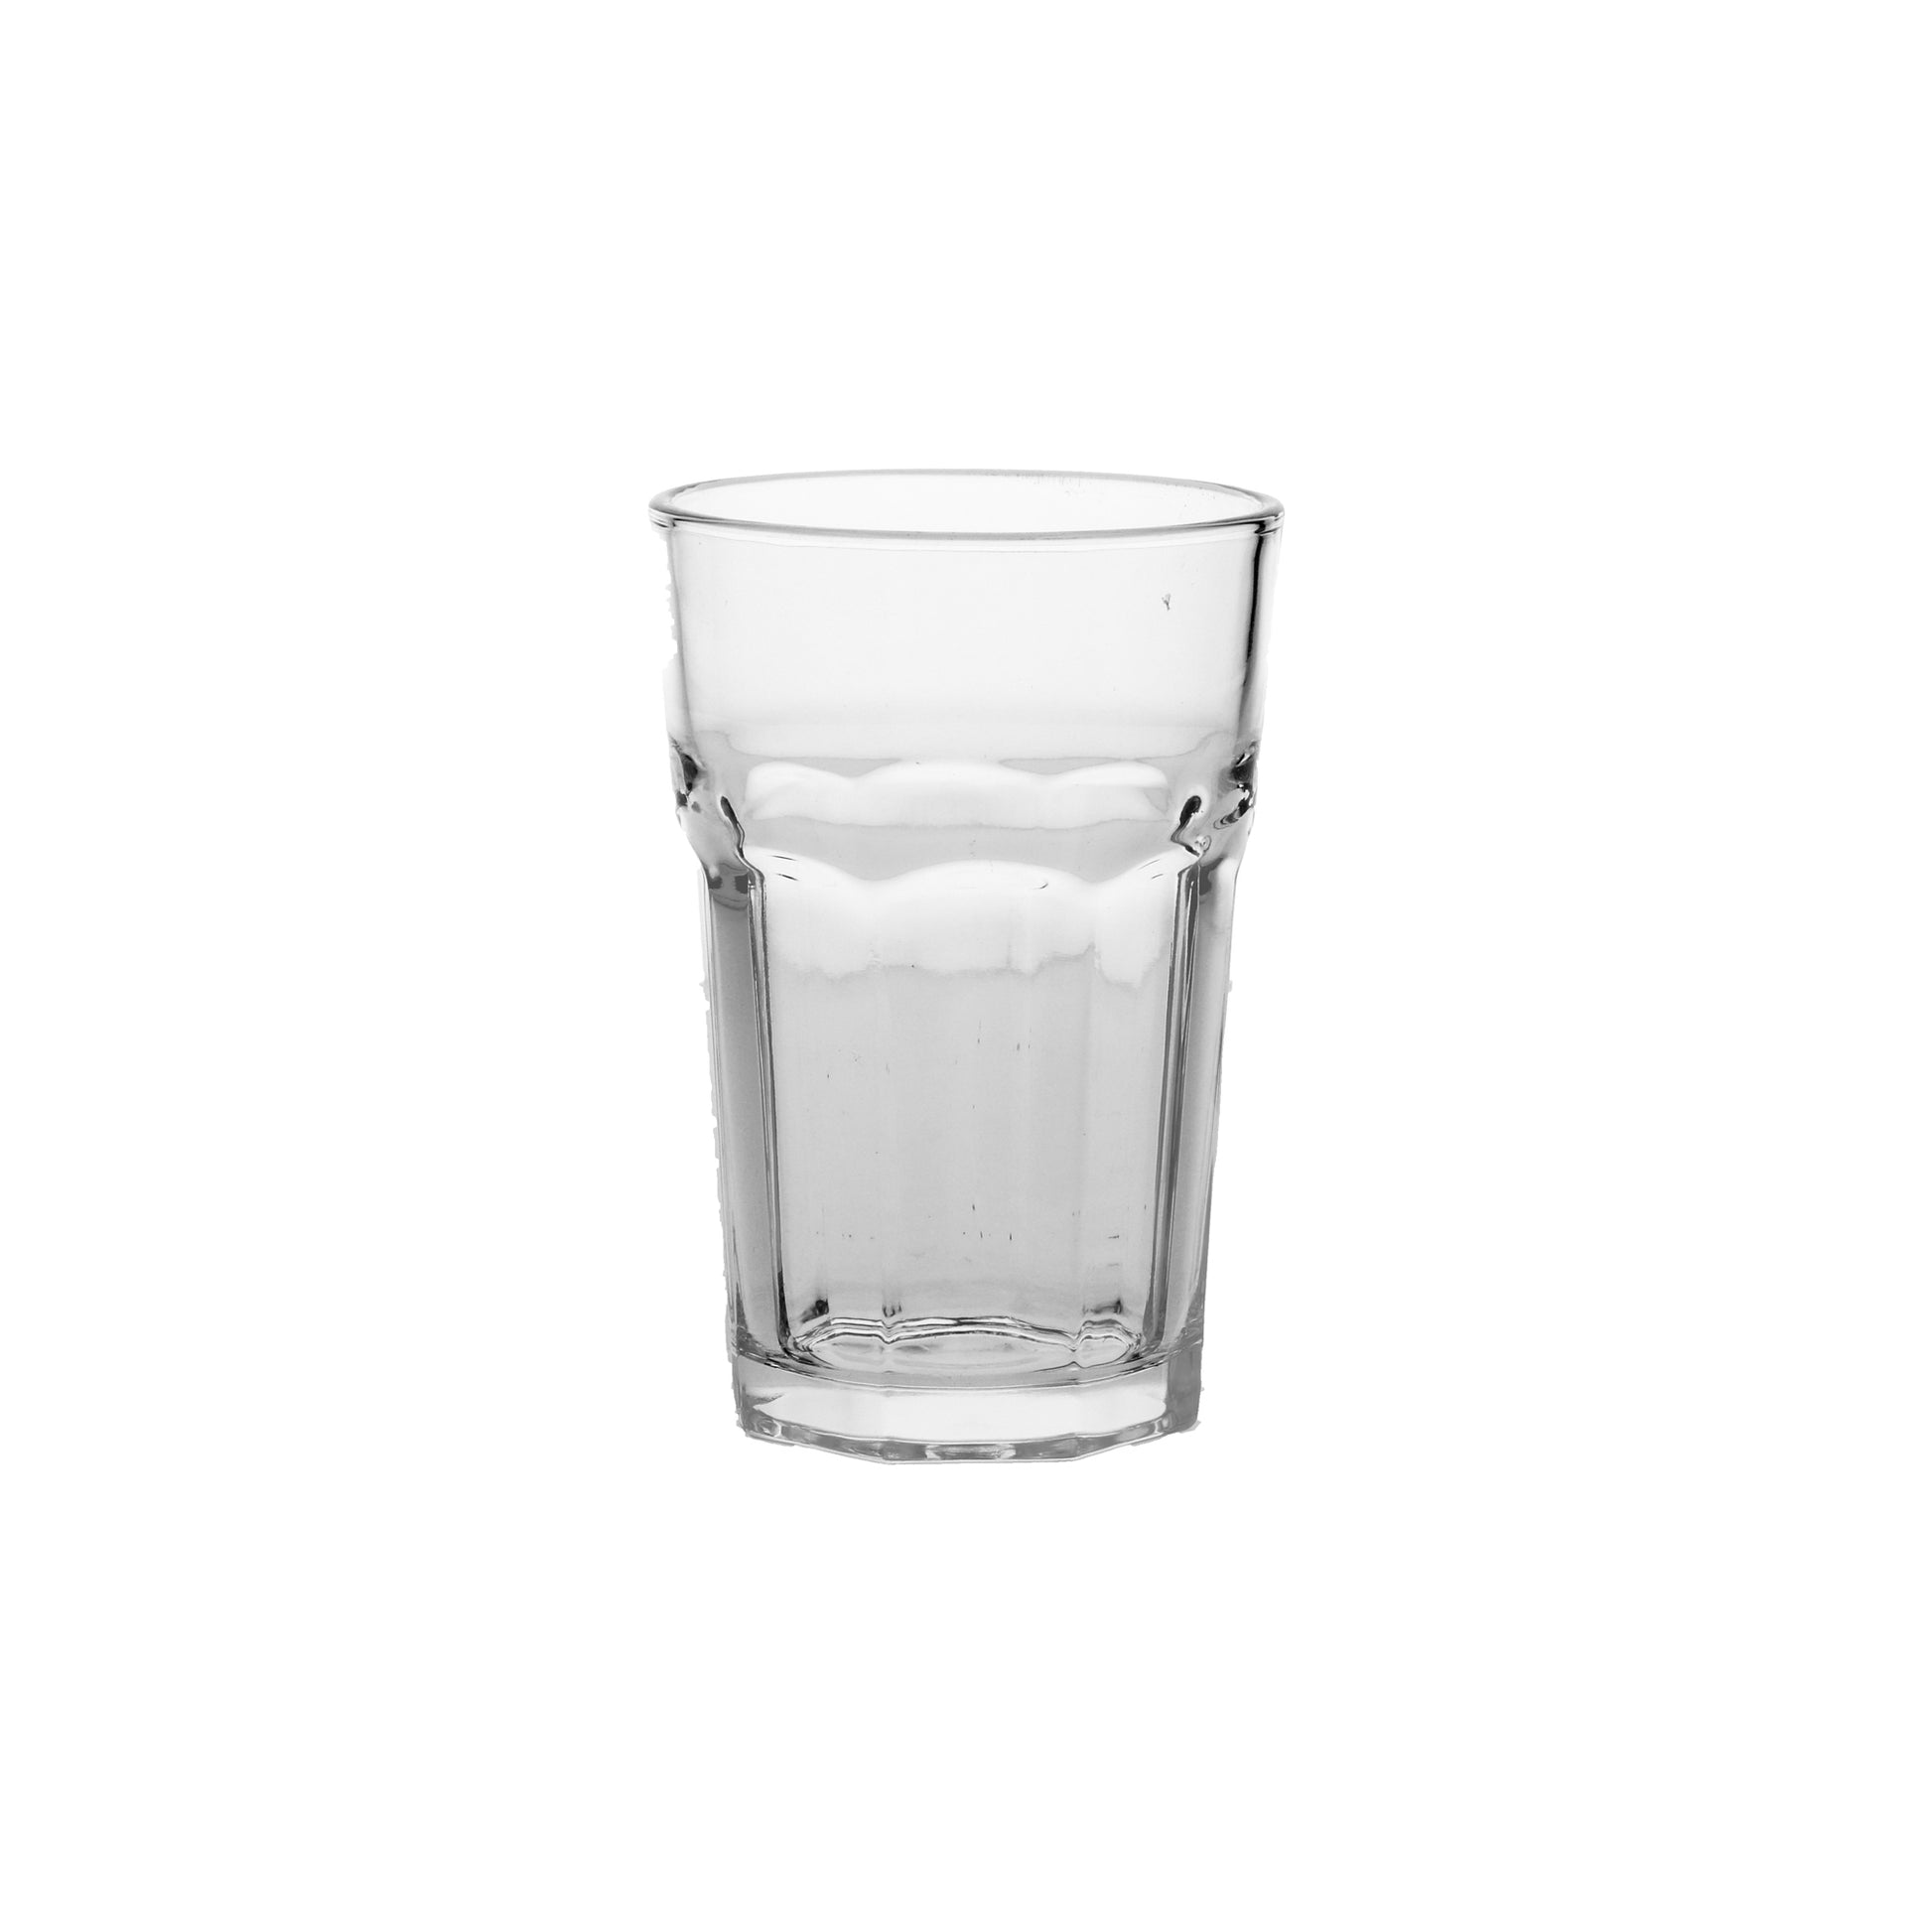 Bicchiere in vetro stampato da bibita o long drink. Dimensioni: cm 8,8 x 13 h cc. 450. Assapora un a bibita, un cocktail o un long drink a casa tua in un comodo bicchiere come al bar. In vendita in negozio e online su tuttochic.it